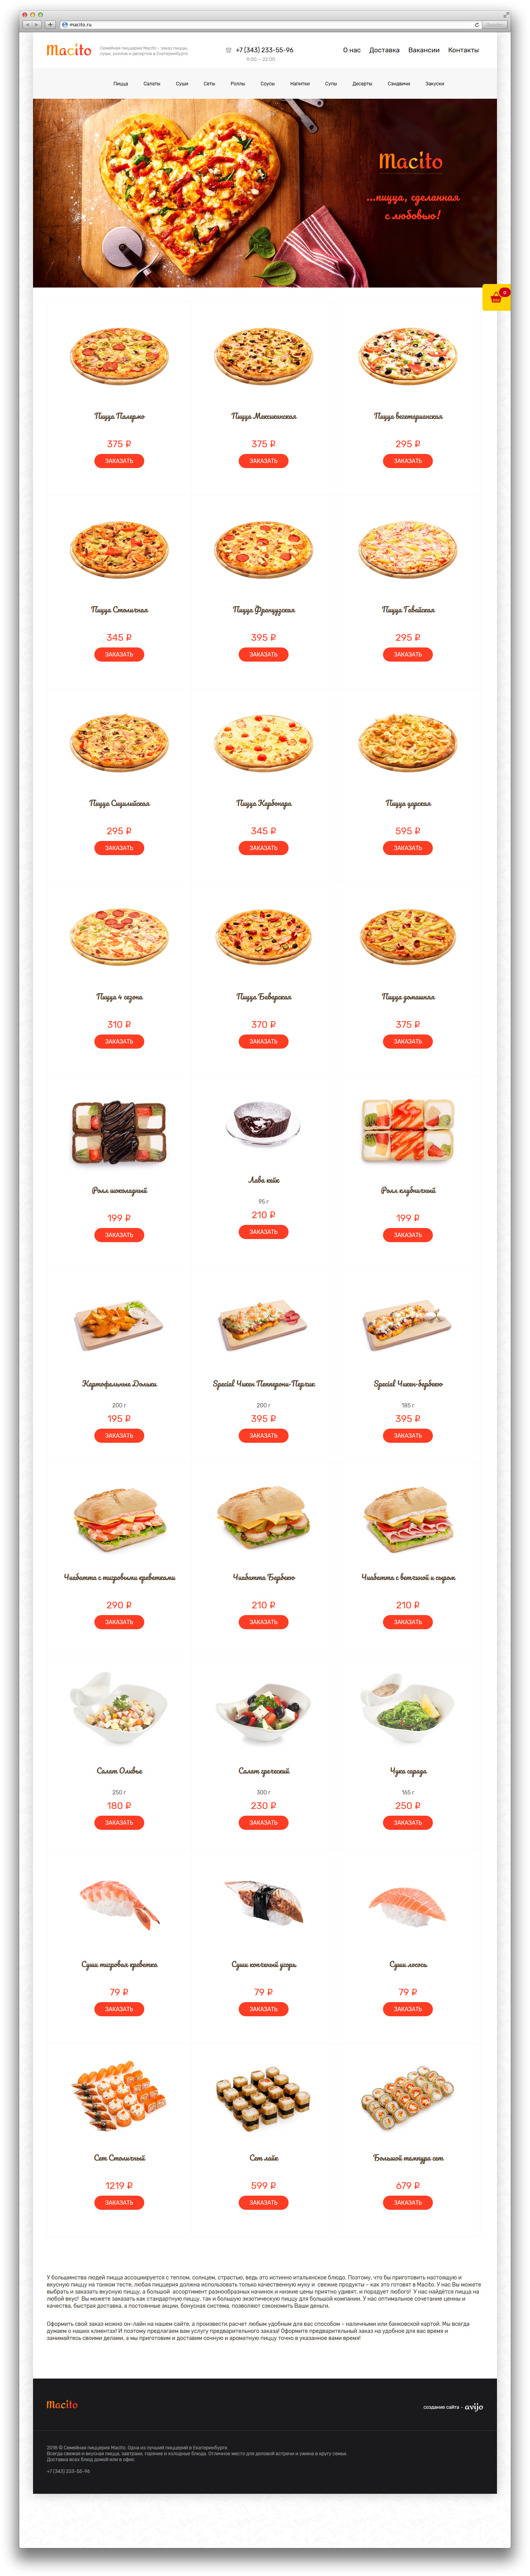 Разработка сайта пиццерии Macito - заказ суши и пиццы онлайн — РФ. Авторская разработка сайтов по индивидуальному заказу для любых видов бизнеса. Персональные и корпоративные сайты, интернет-магазины и лендинги под ключ